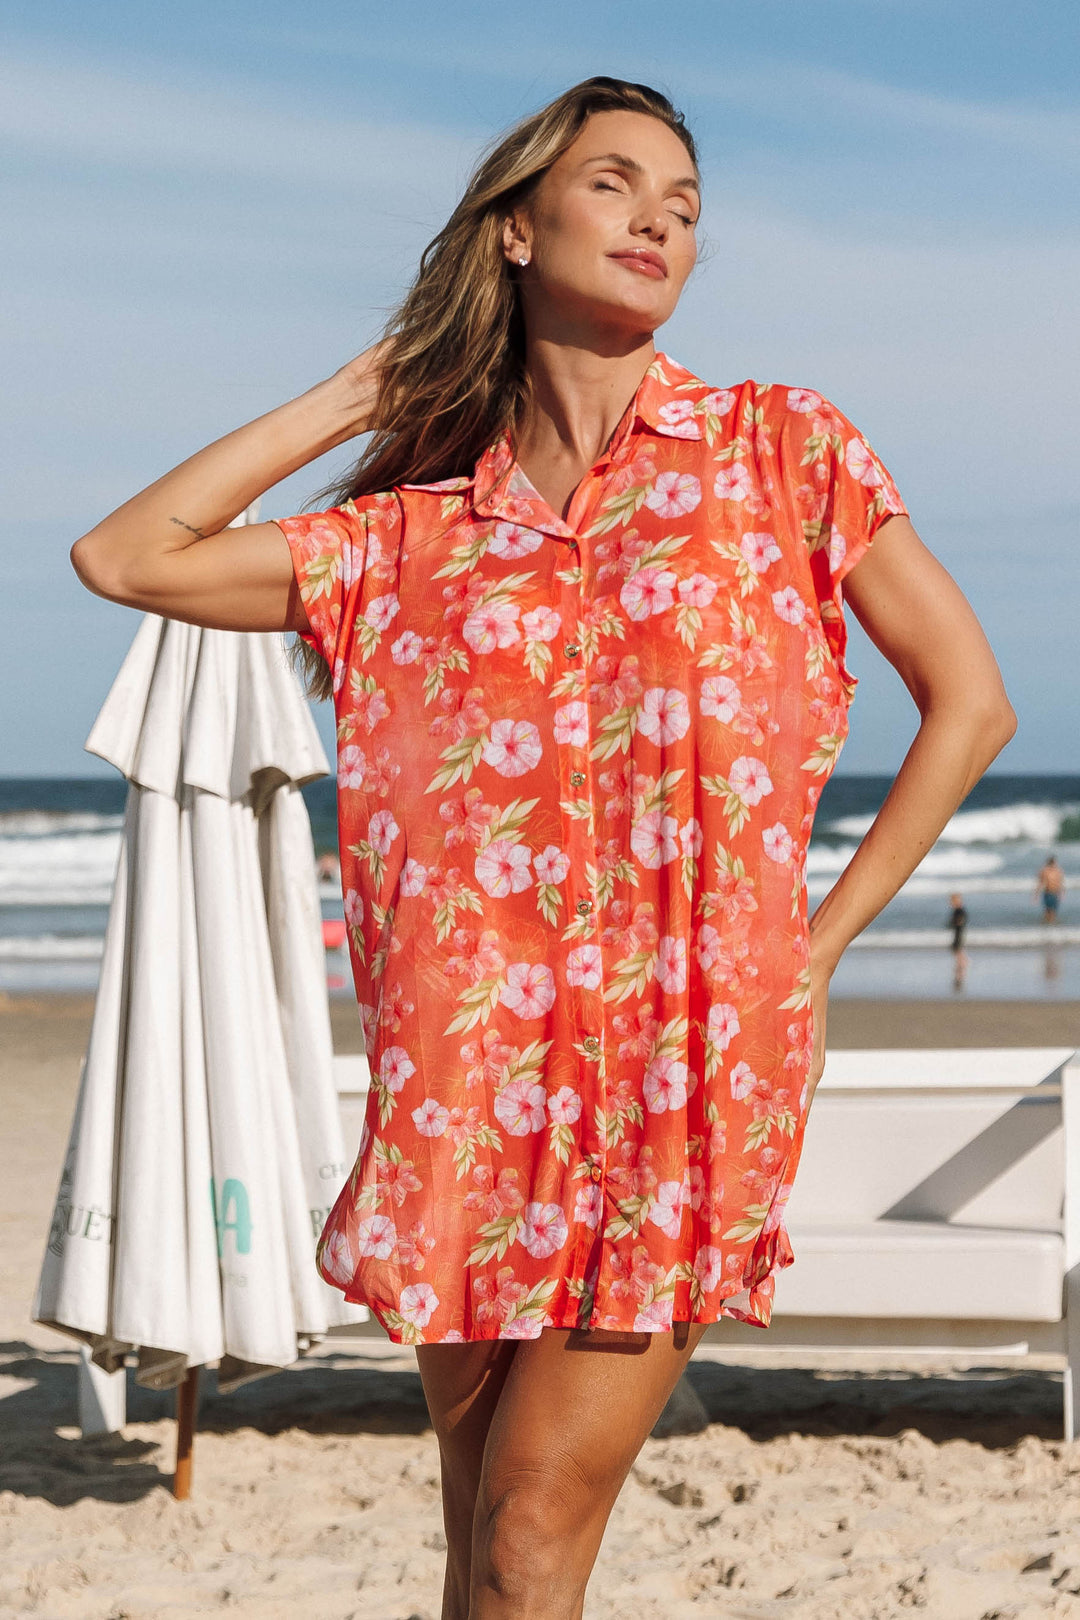 Camisa Alex , saída femininas, moda praia, de tule com botões frontais dourados, ideal para um visual praiano sofisticado. Na Estampa, Hibiscos Coral, da Lili Sampedro.